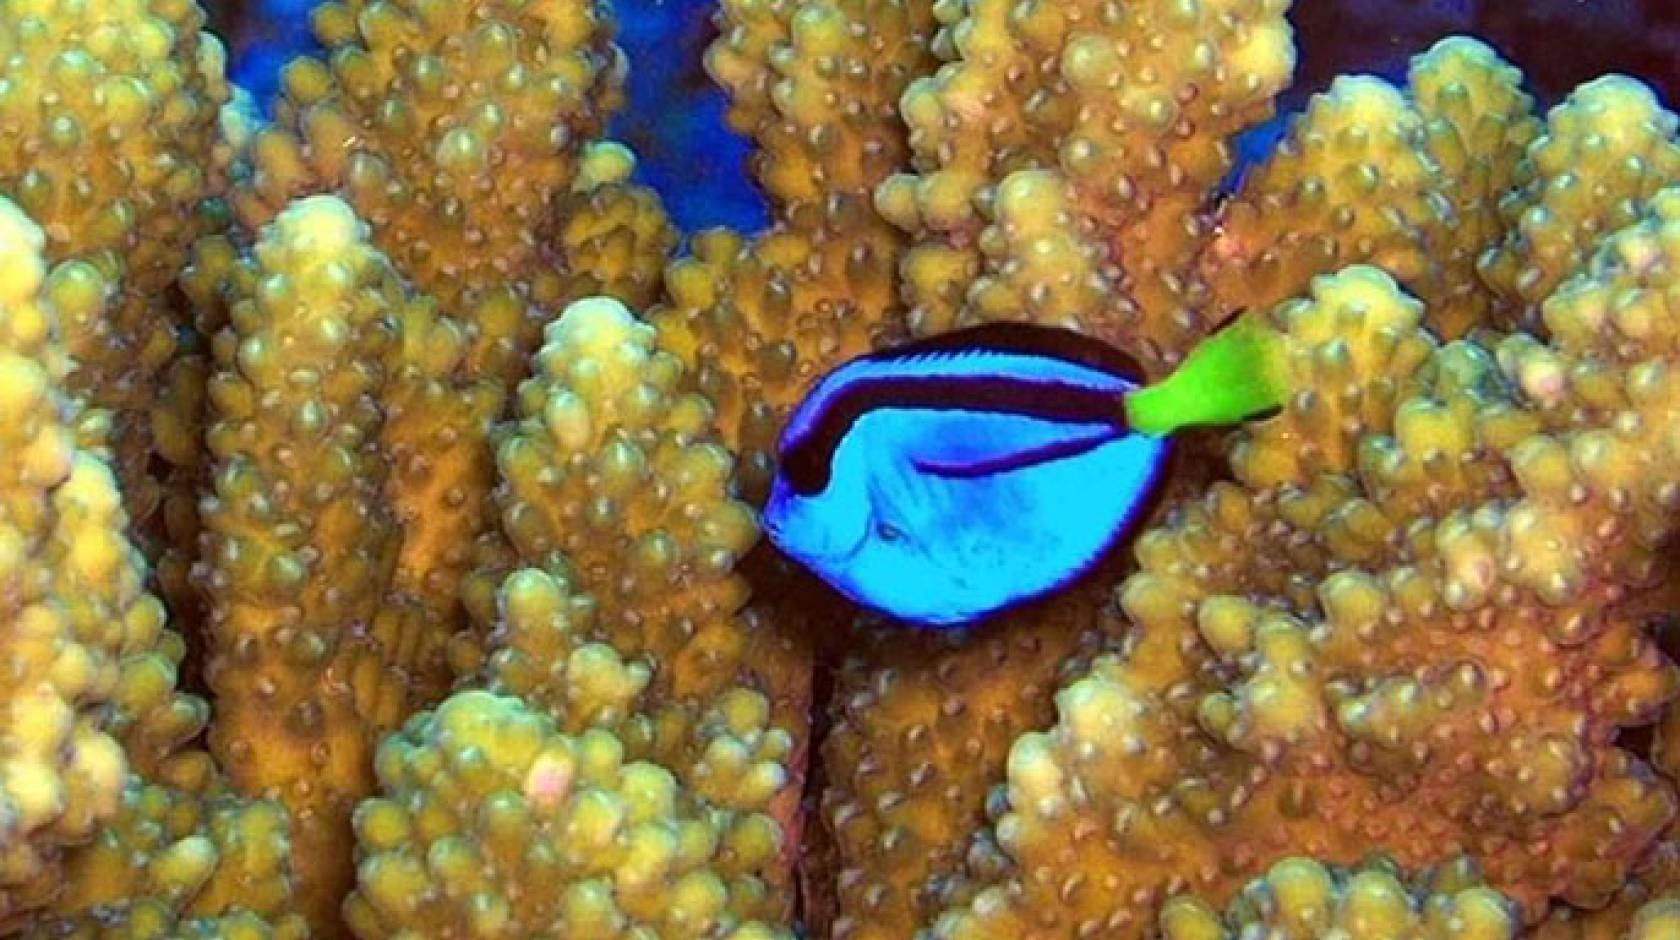 Coral reef surgeonfish